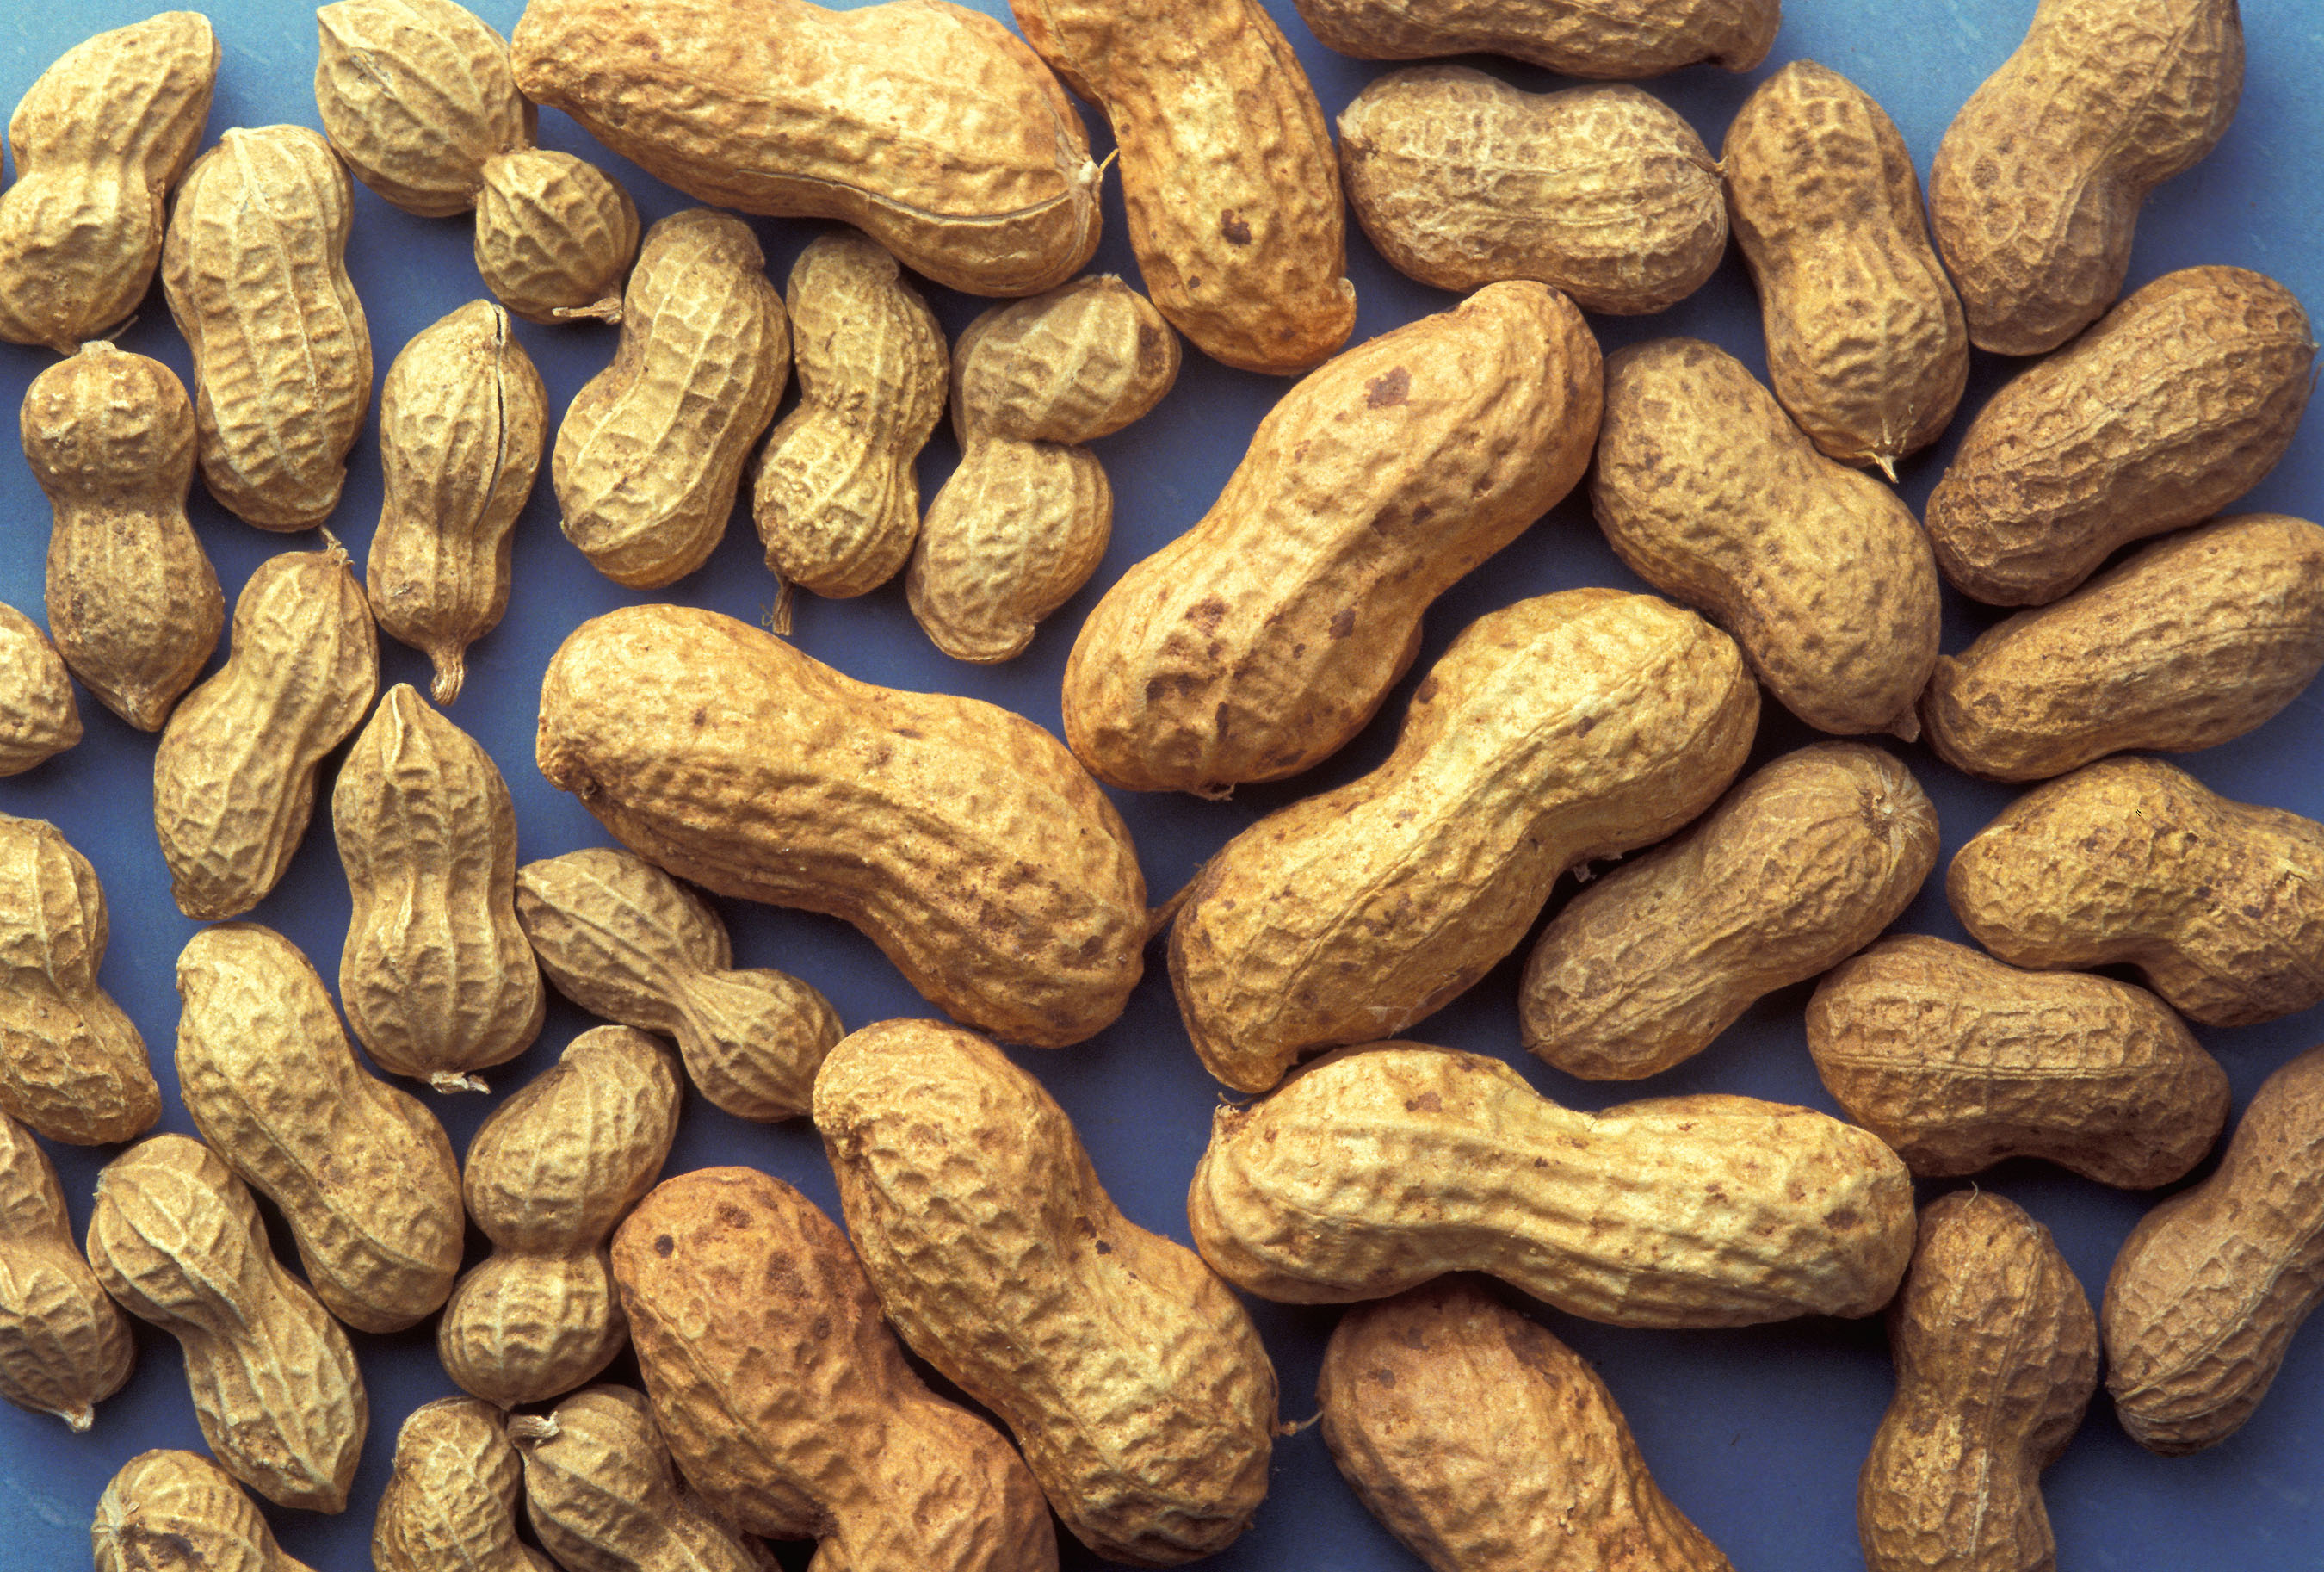 ARS peanuts